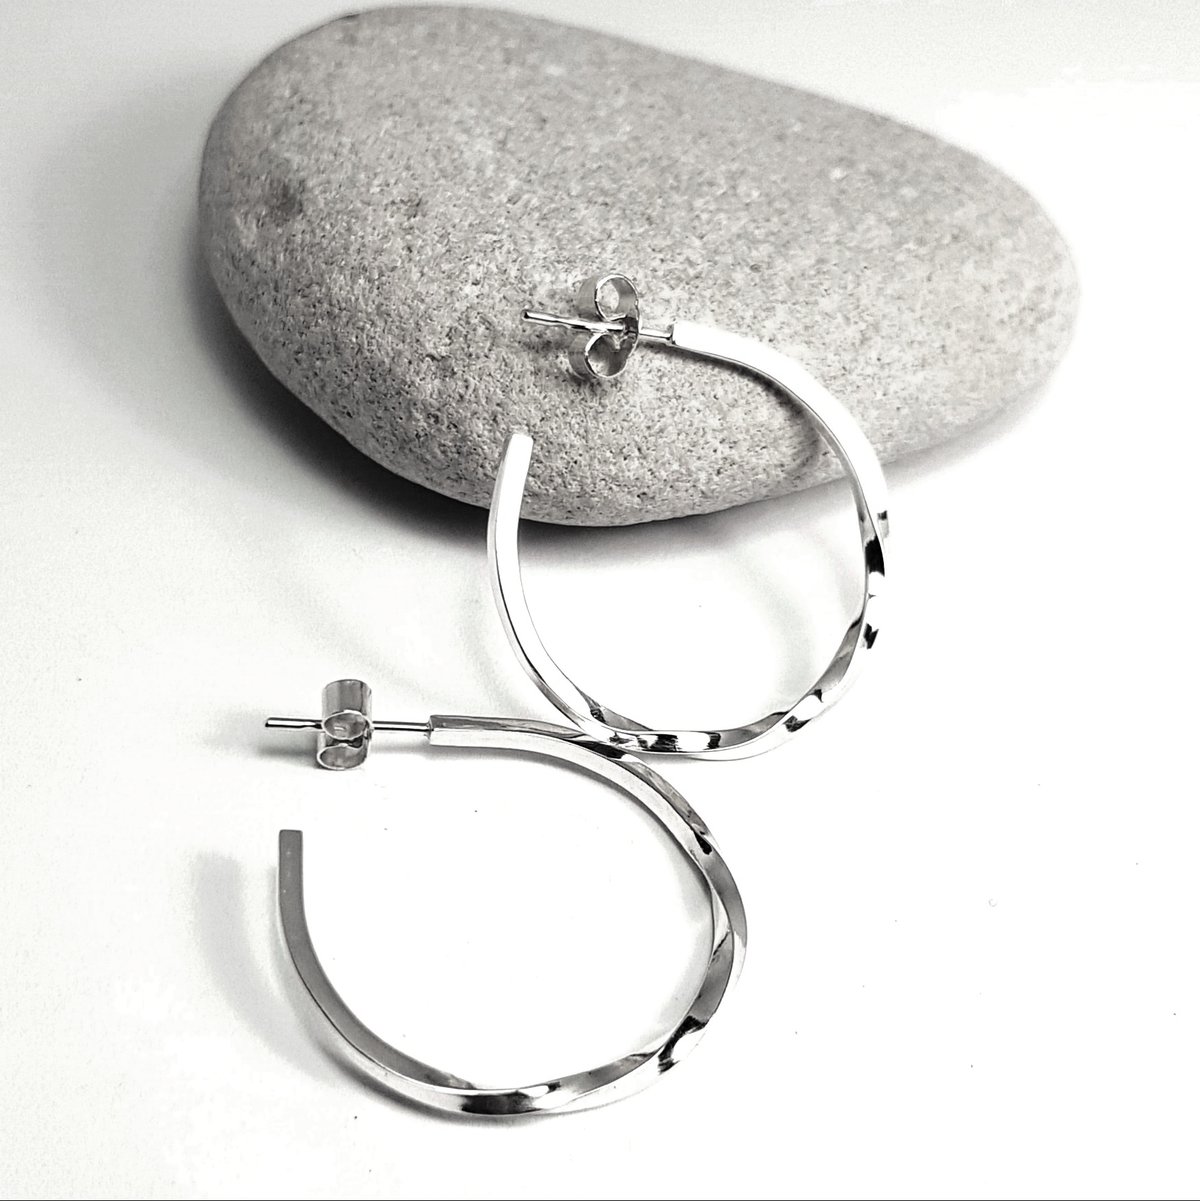 Image of Sterling Silver Hoop Earrings, Handmade Silver Hoops